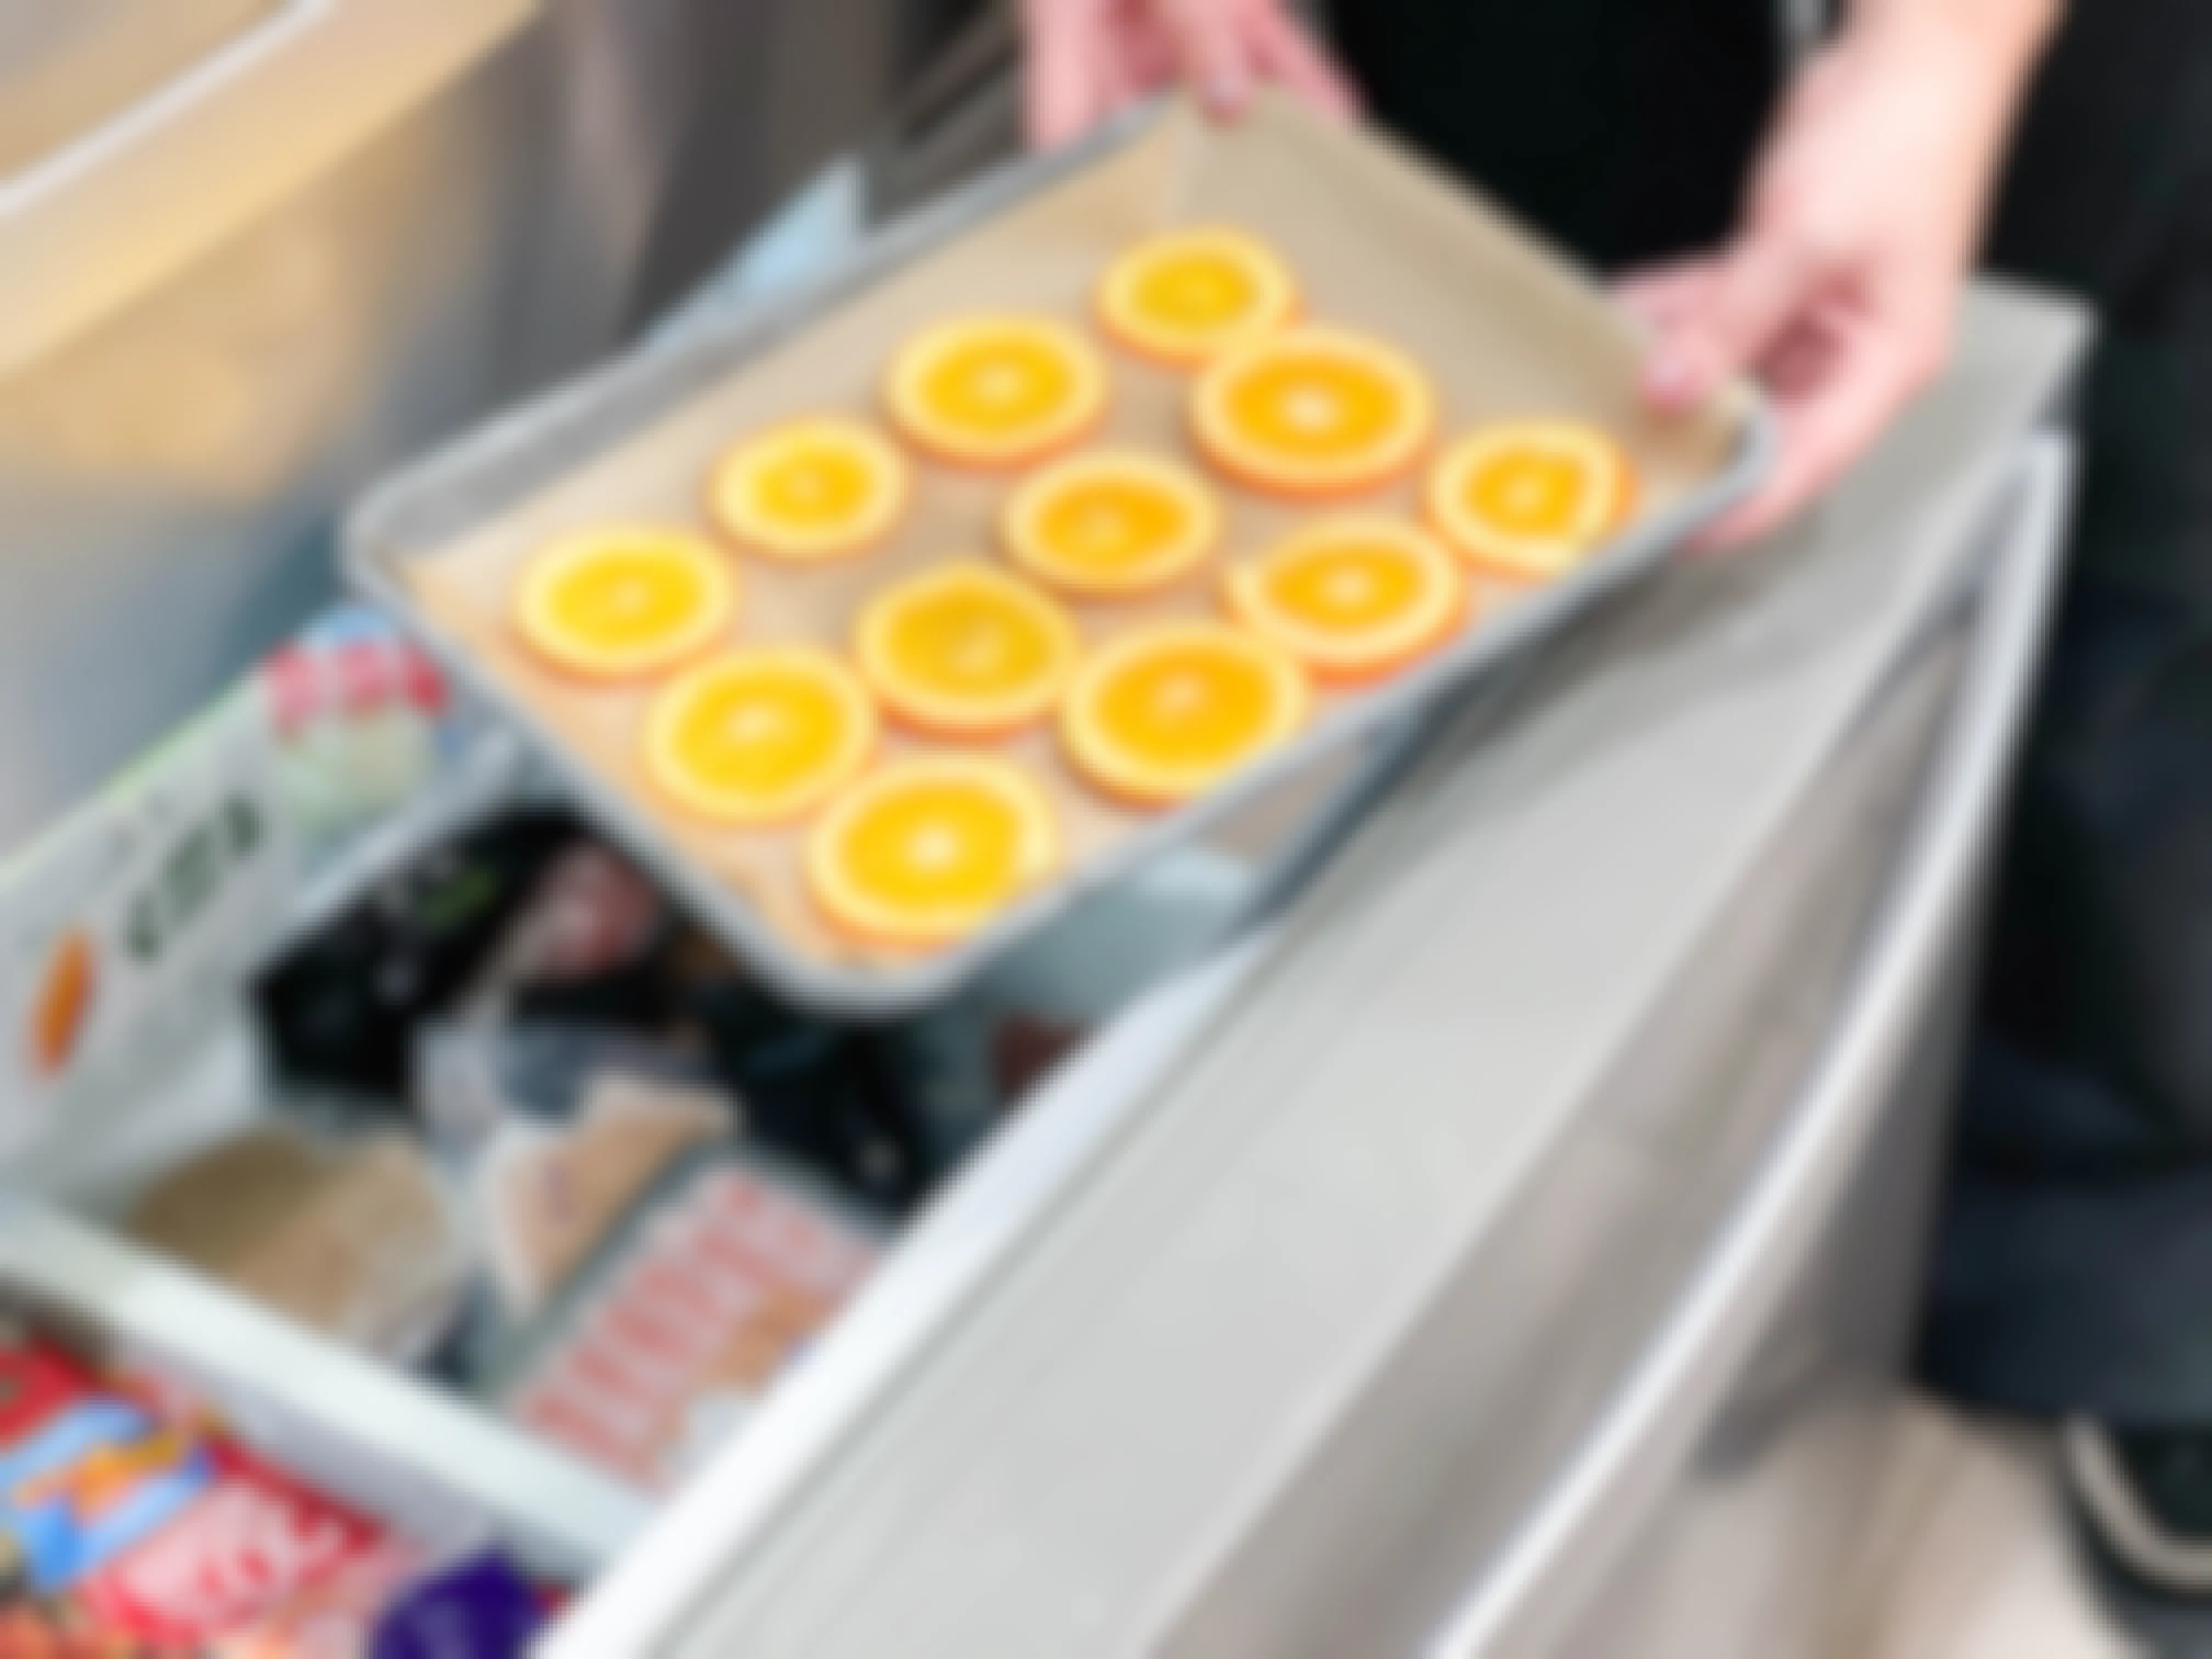 orange sliced being put in freezer